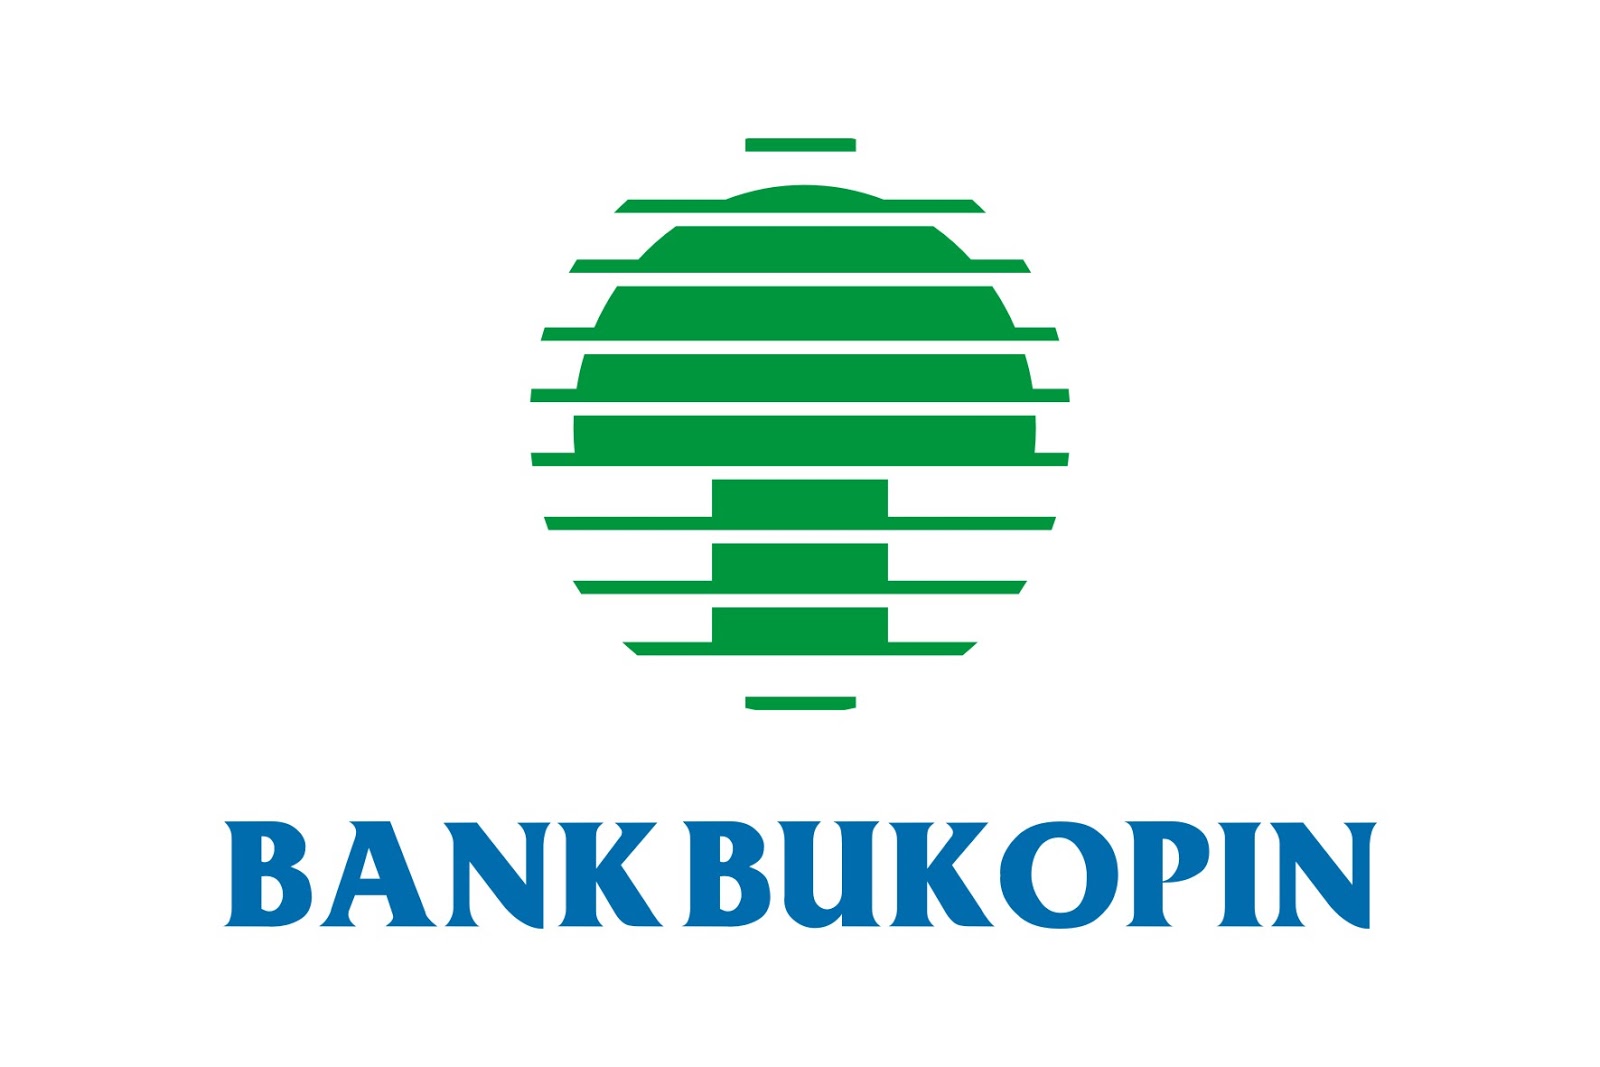 Bank Bukopin Brand Logo